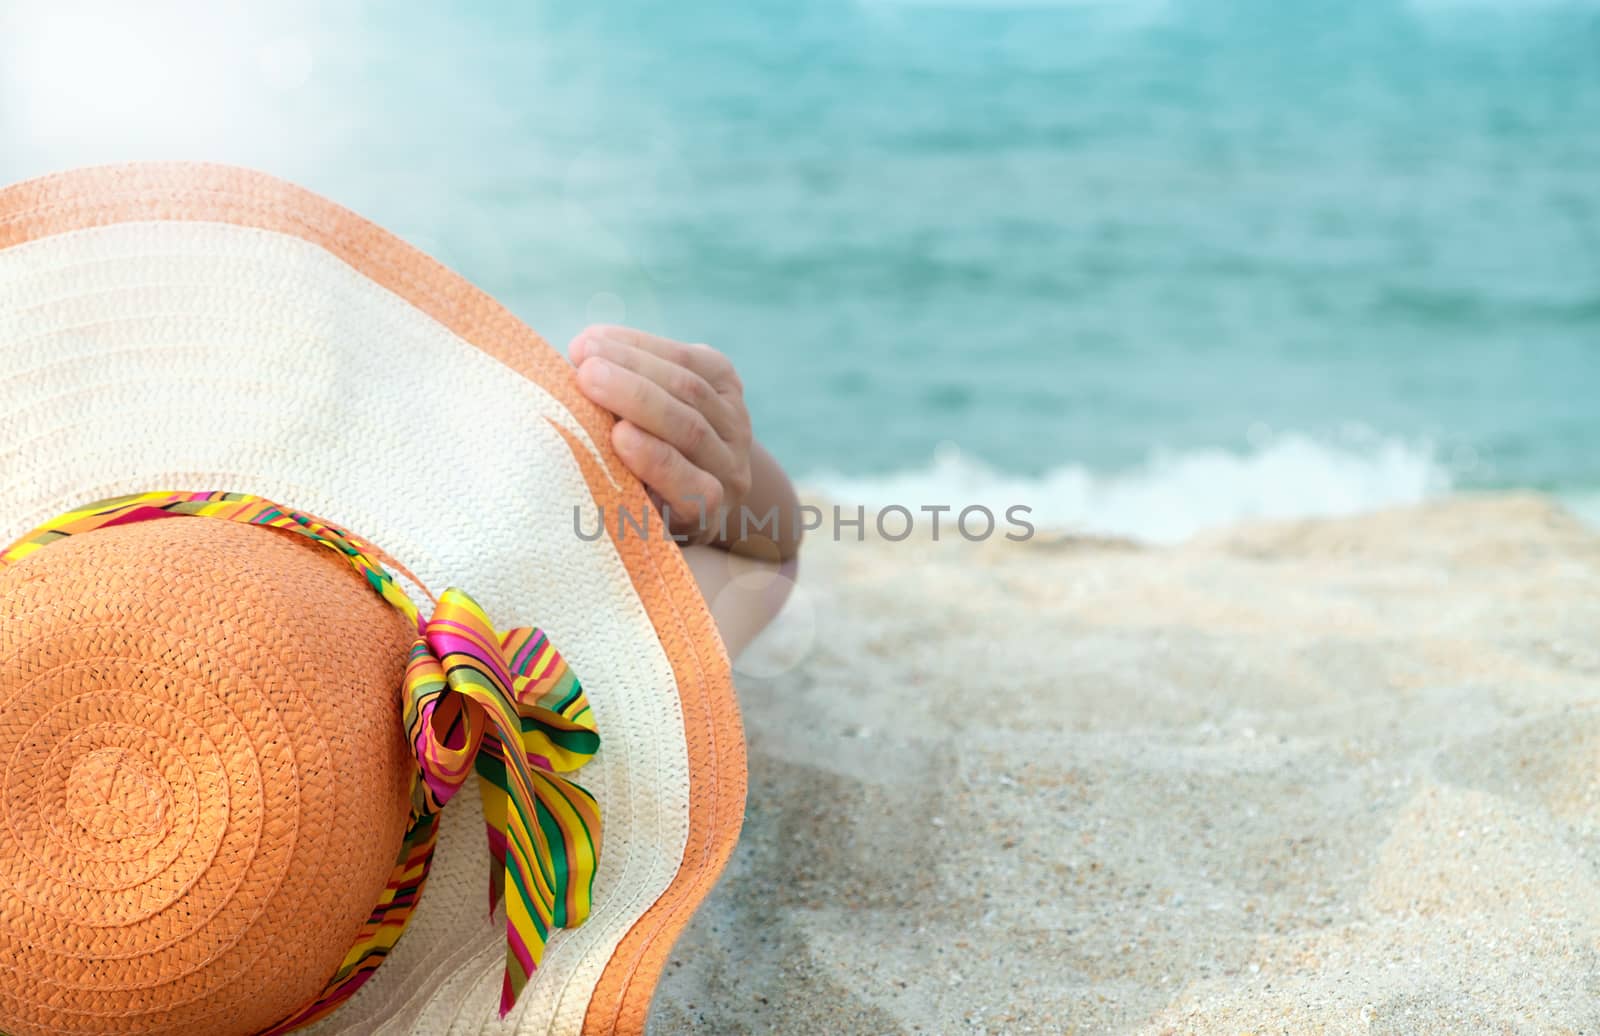 Women wearing hats are sunbathing by the sea.